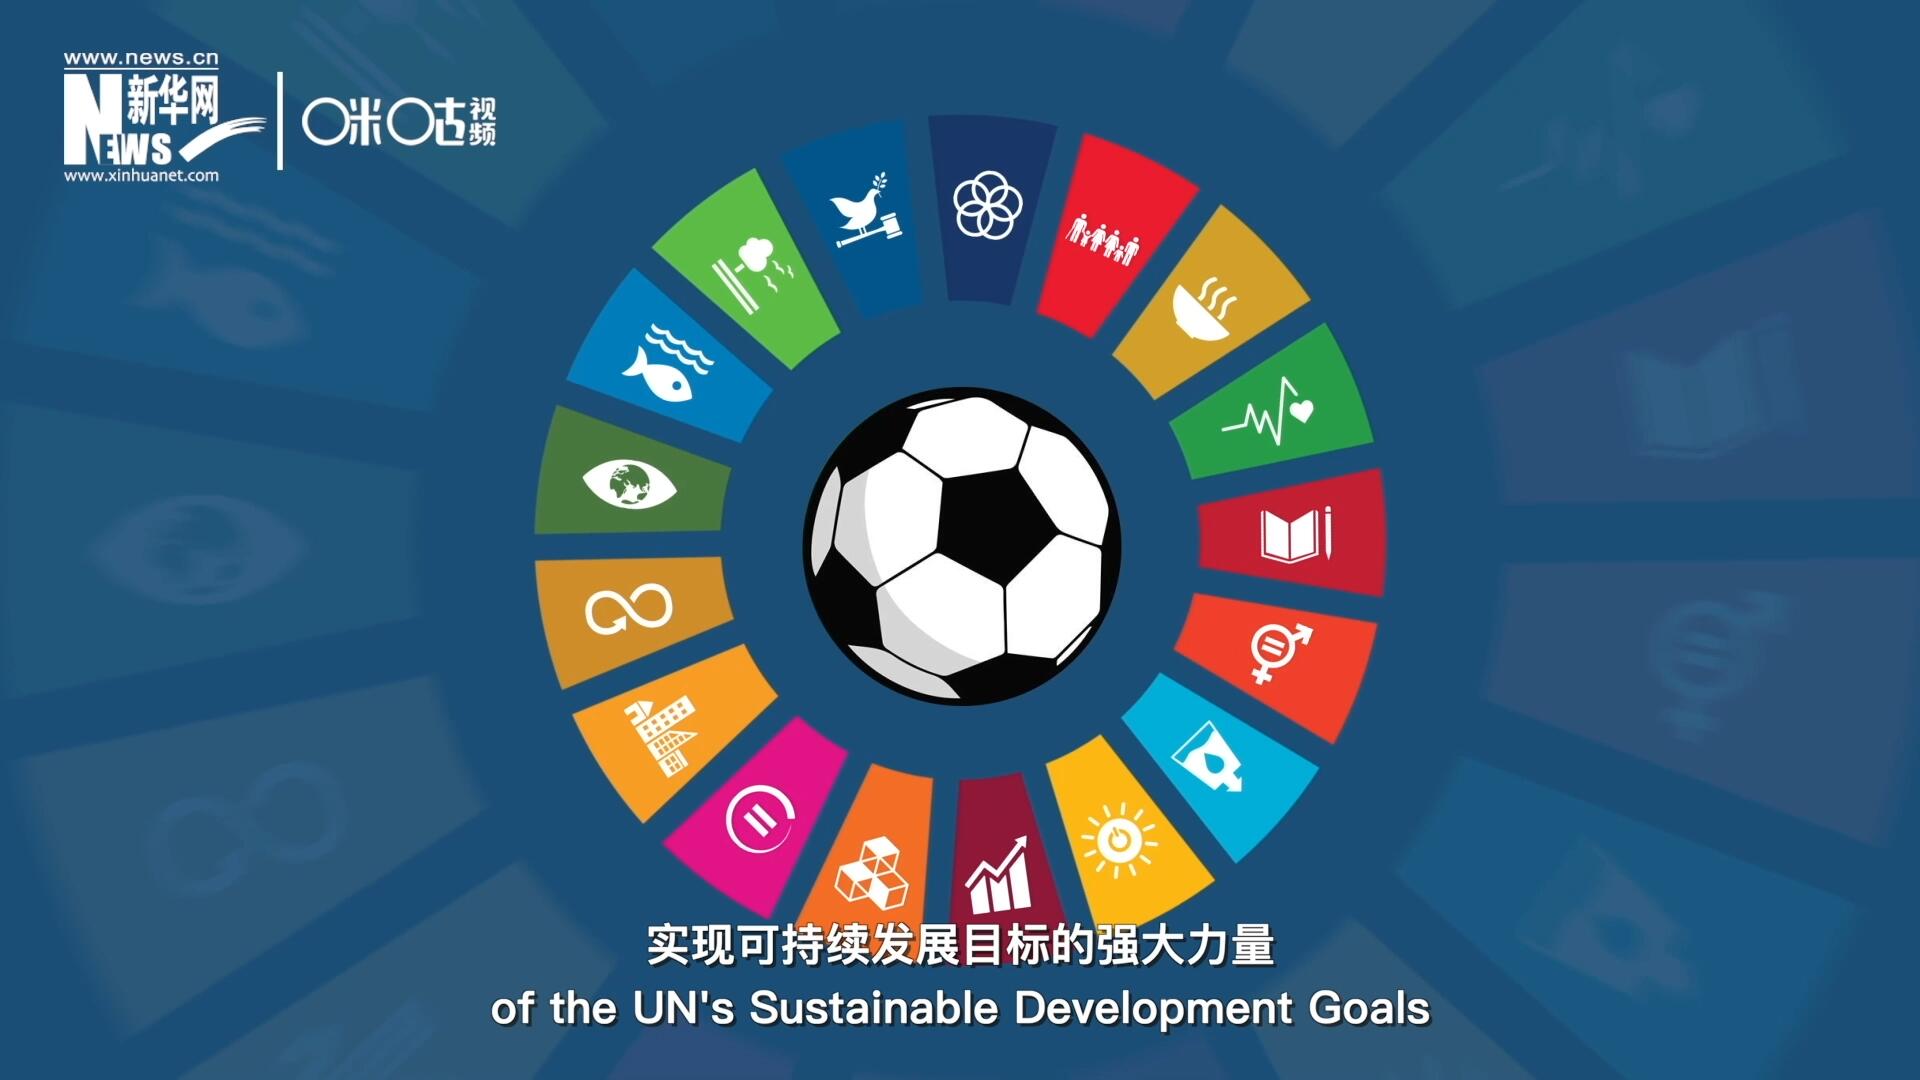 足球是帮助联合国实现可持续发展目标的强大力量